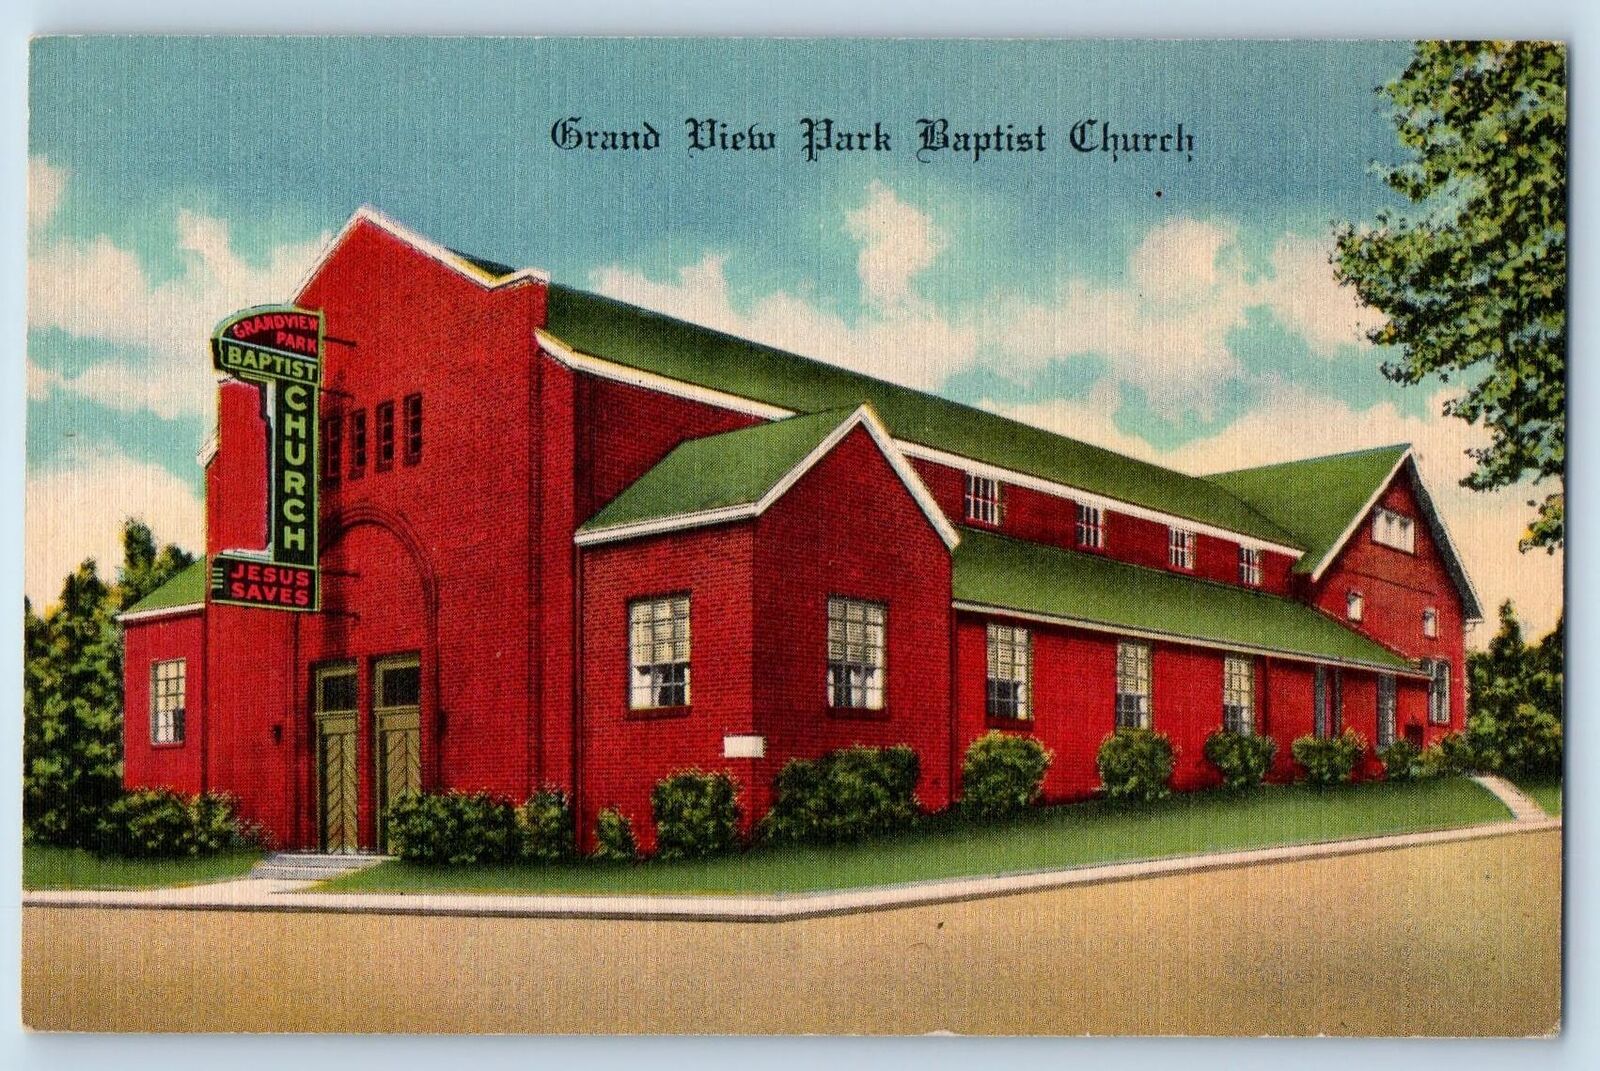 Des Moines Iowa IA Postcard Grand View Park Baptist Church Scene c1940's Vintage